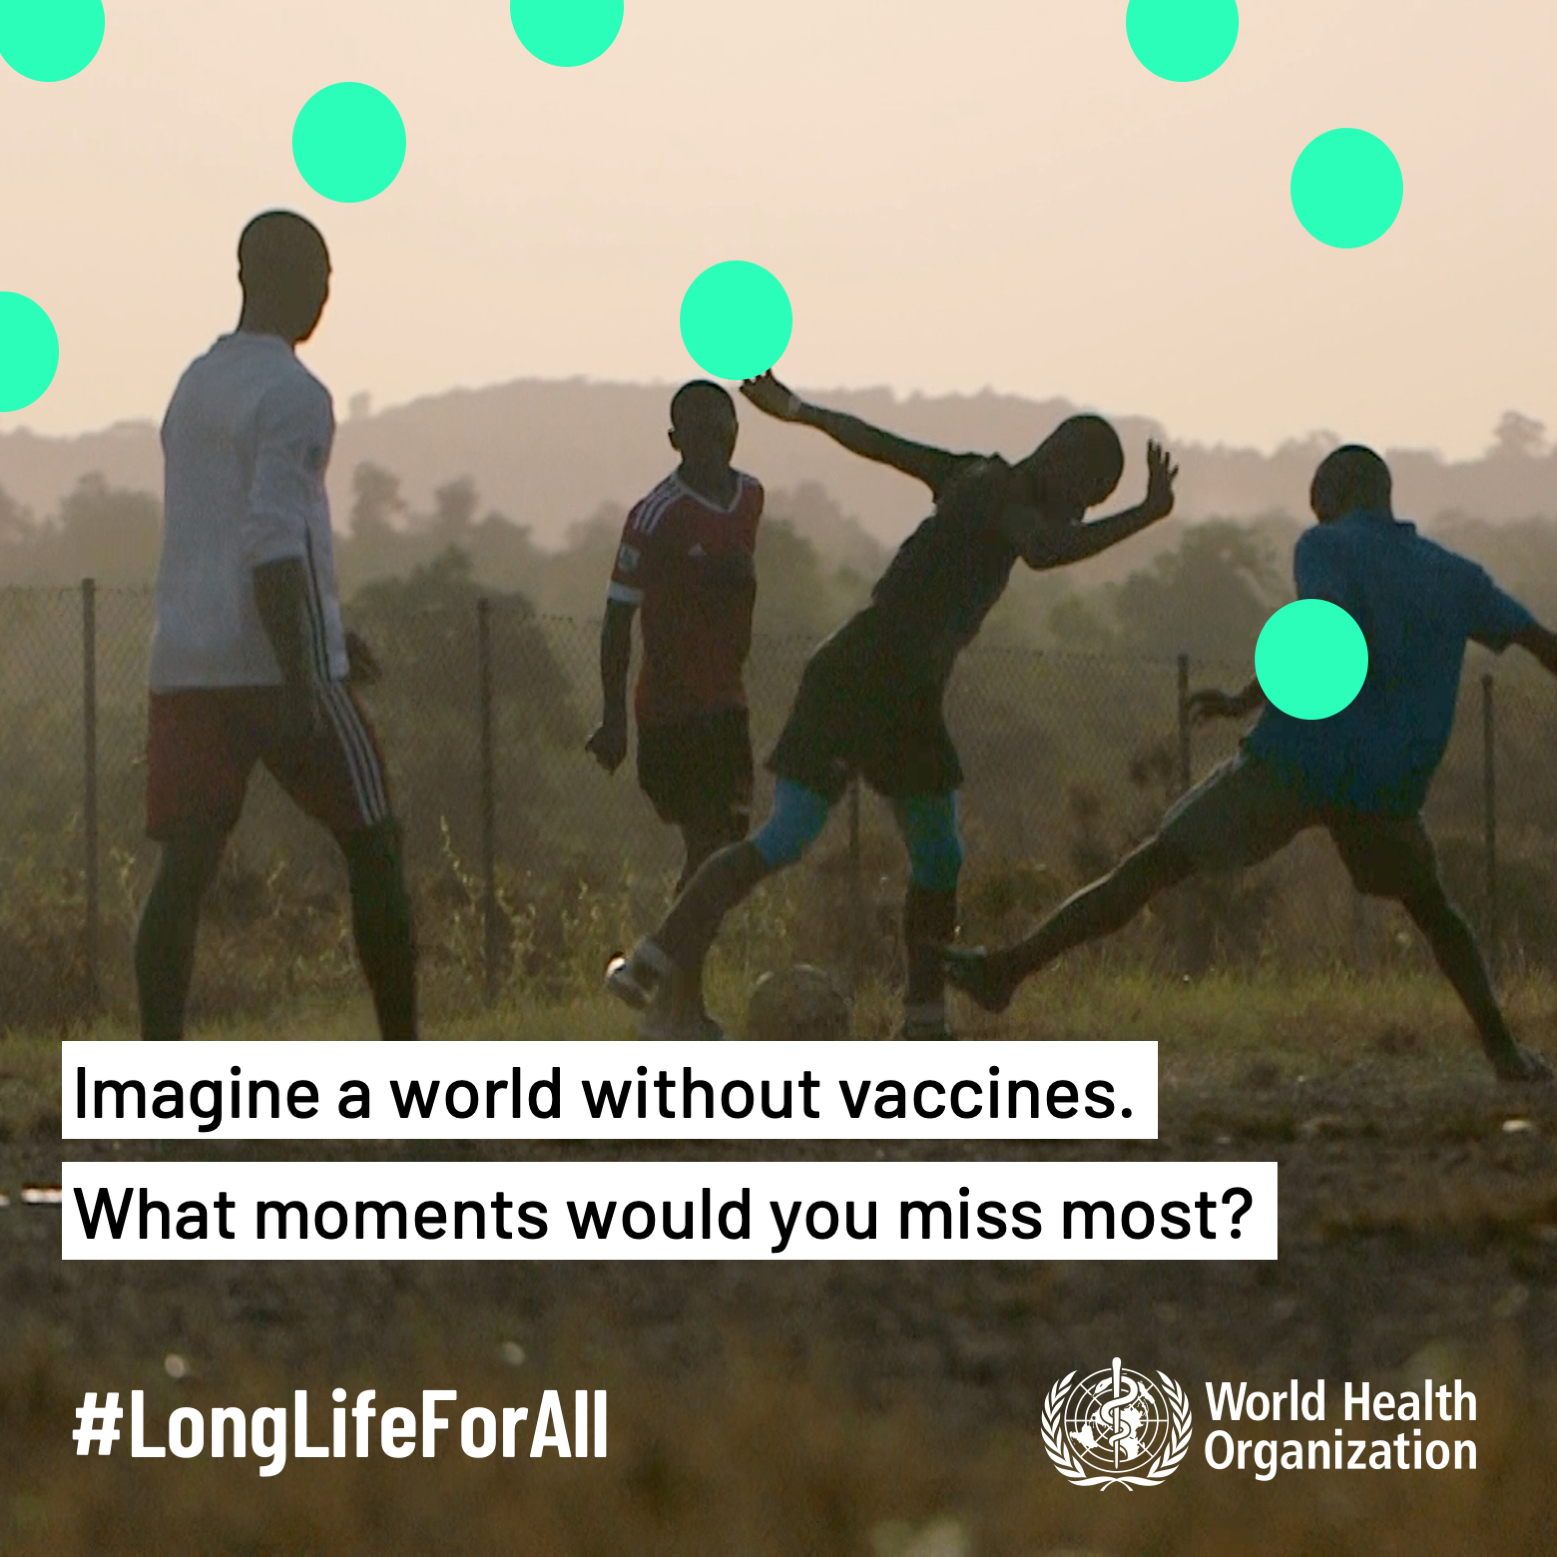 Immagina un mondo senza vaccini. Quali momenti della tua vita ti mancherebbero di più? #LongLifeForAll